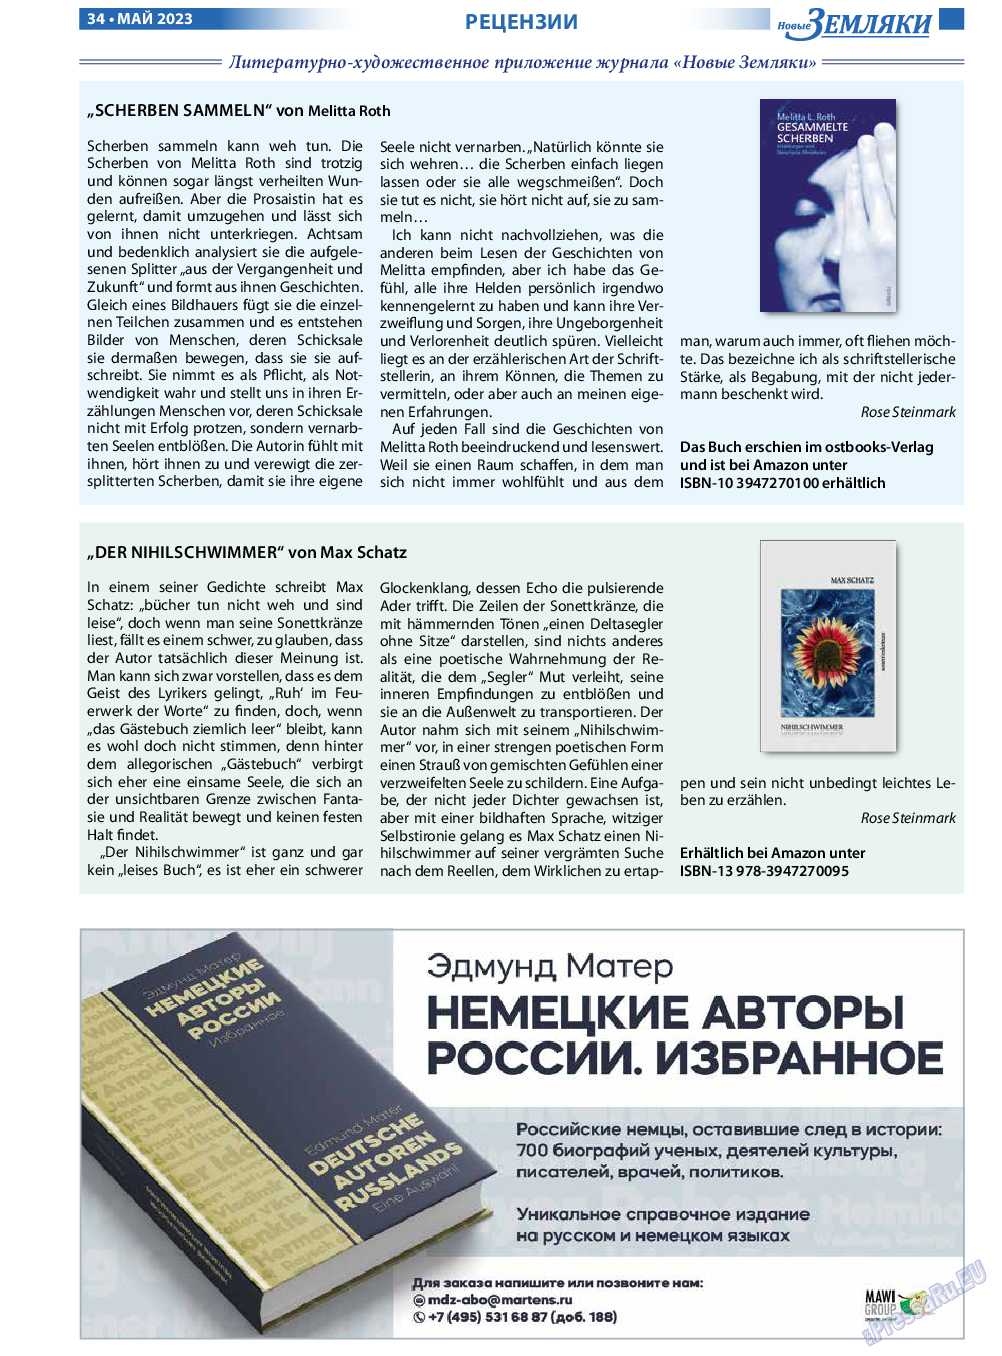 Новые Земляки, газета. 2023 №5 стр.34